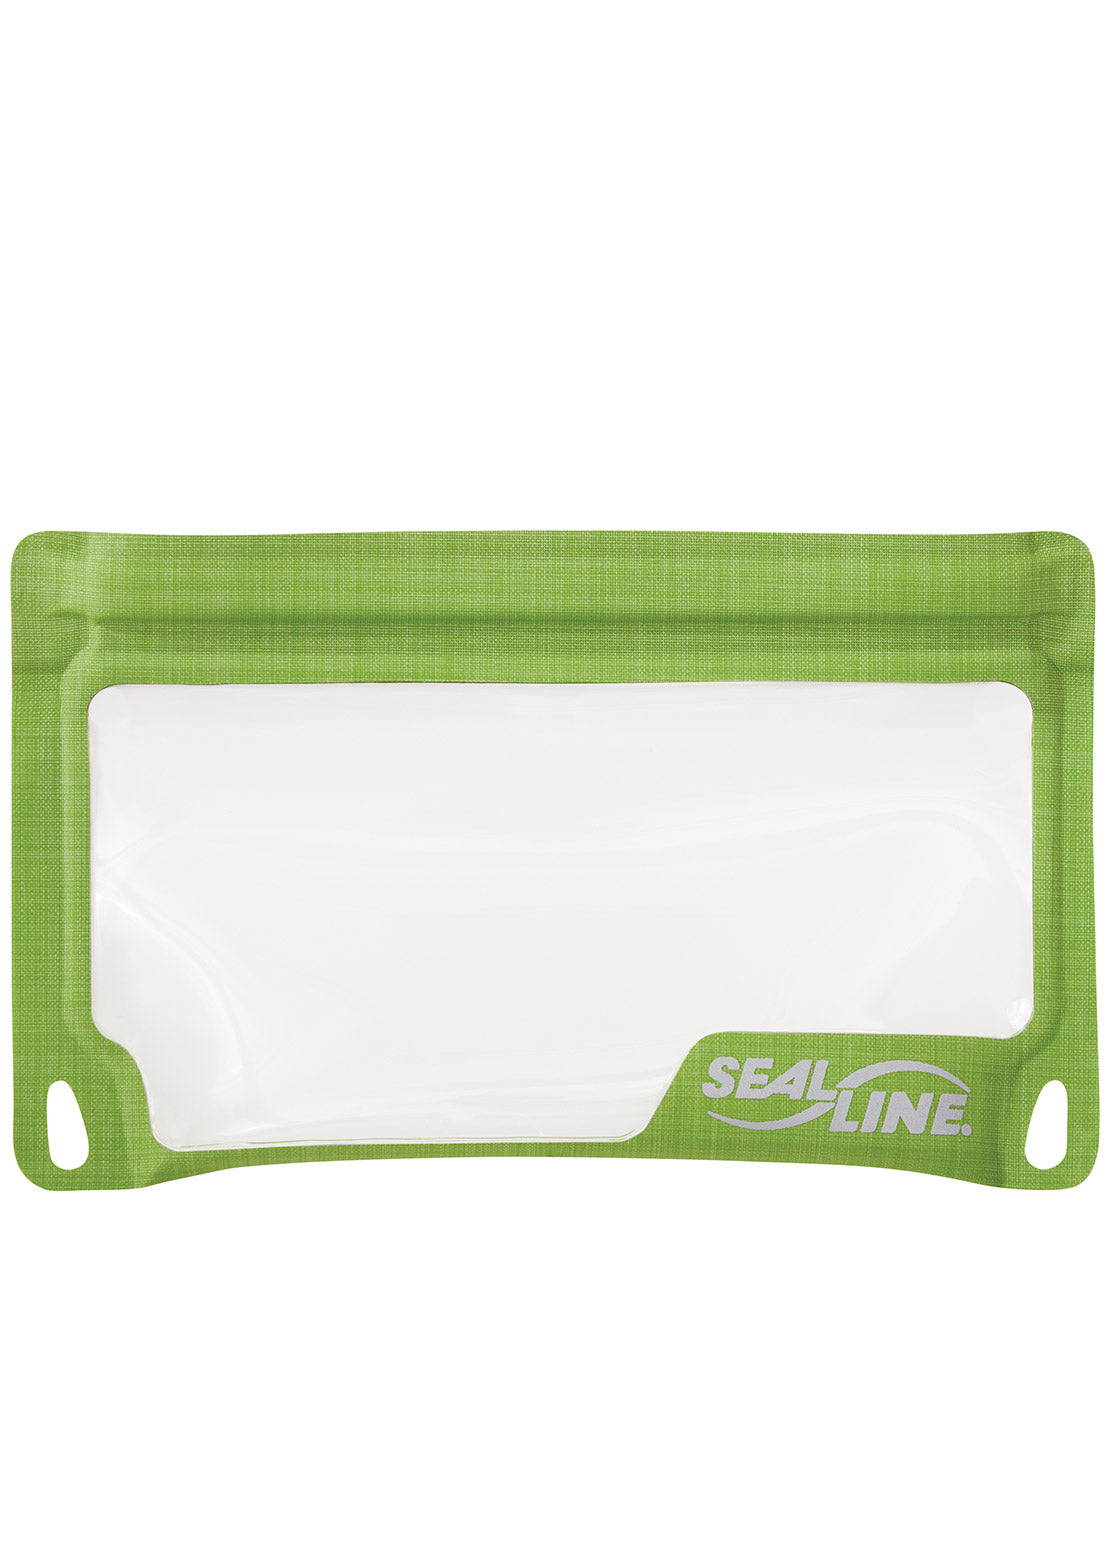 SealLine E-Case Submersible Protection Bag Small Green